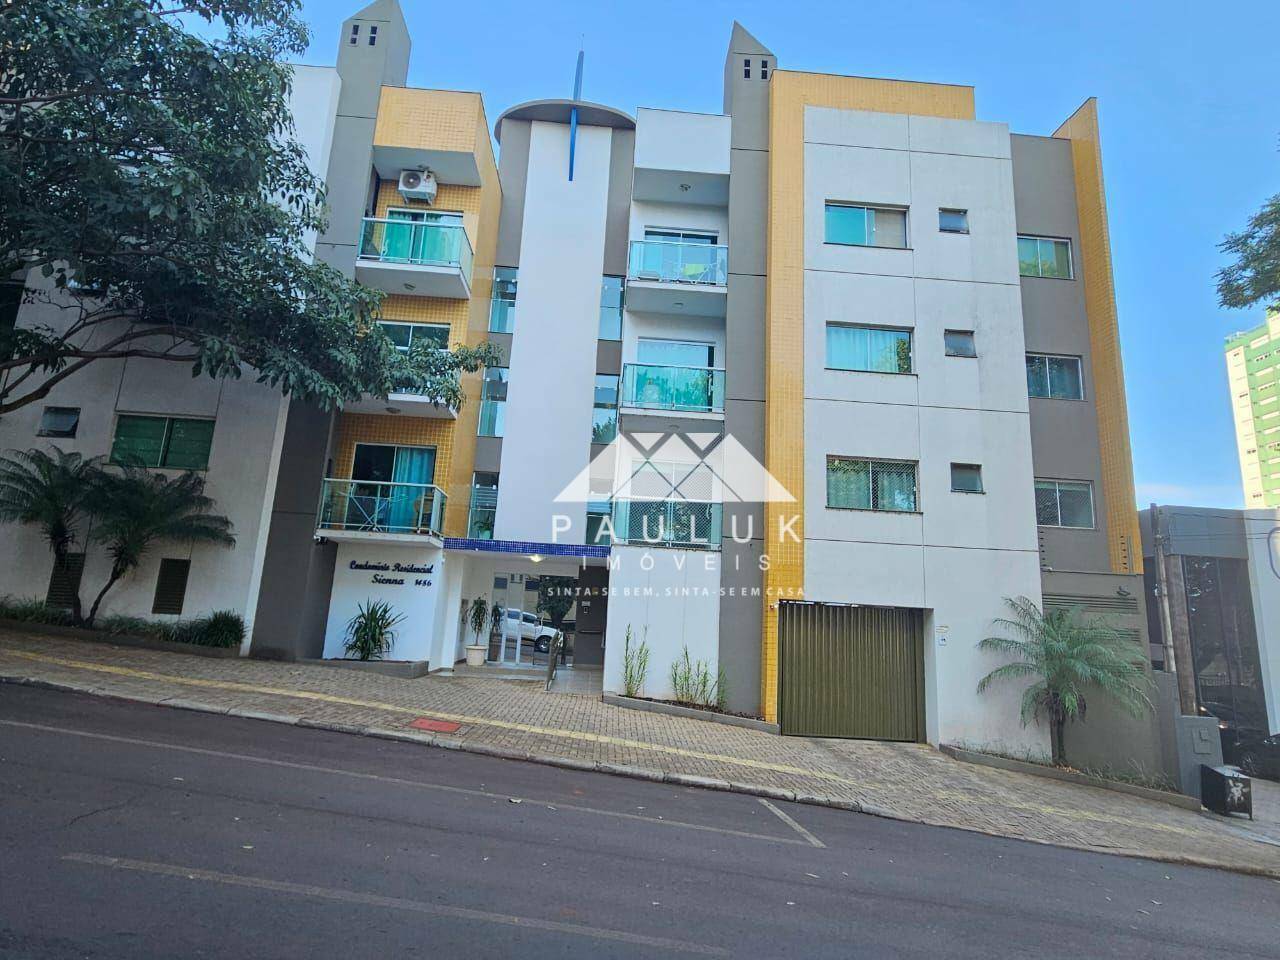 Apartamento com 2 Dormitórios Sendo 1 Suíte à Venda, 51 M² Por R$ 350.000 - Condomínio Residencial S | PAULUK IMÓVEIS | Portal OBusca